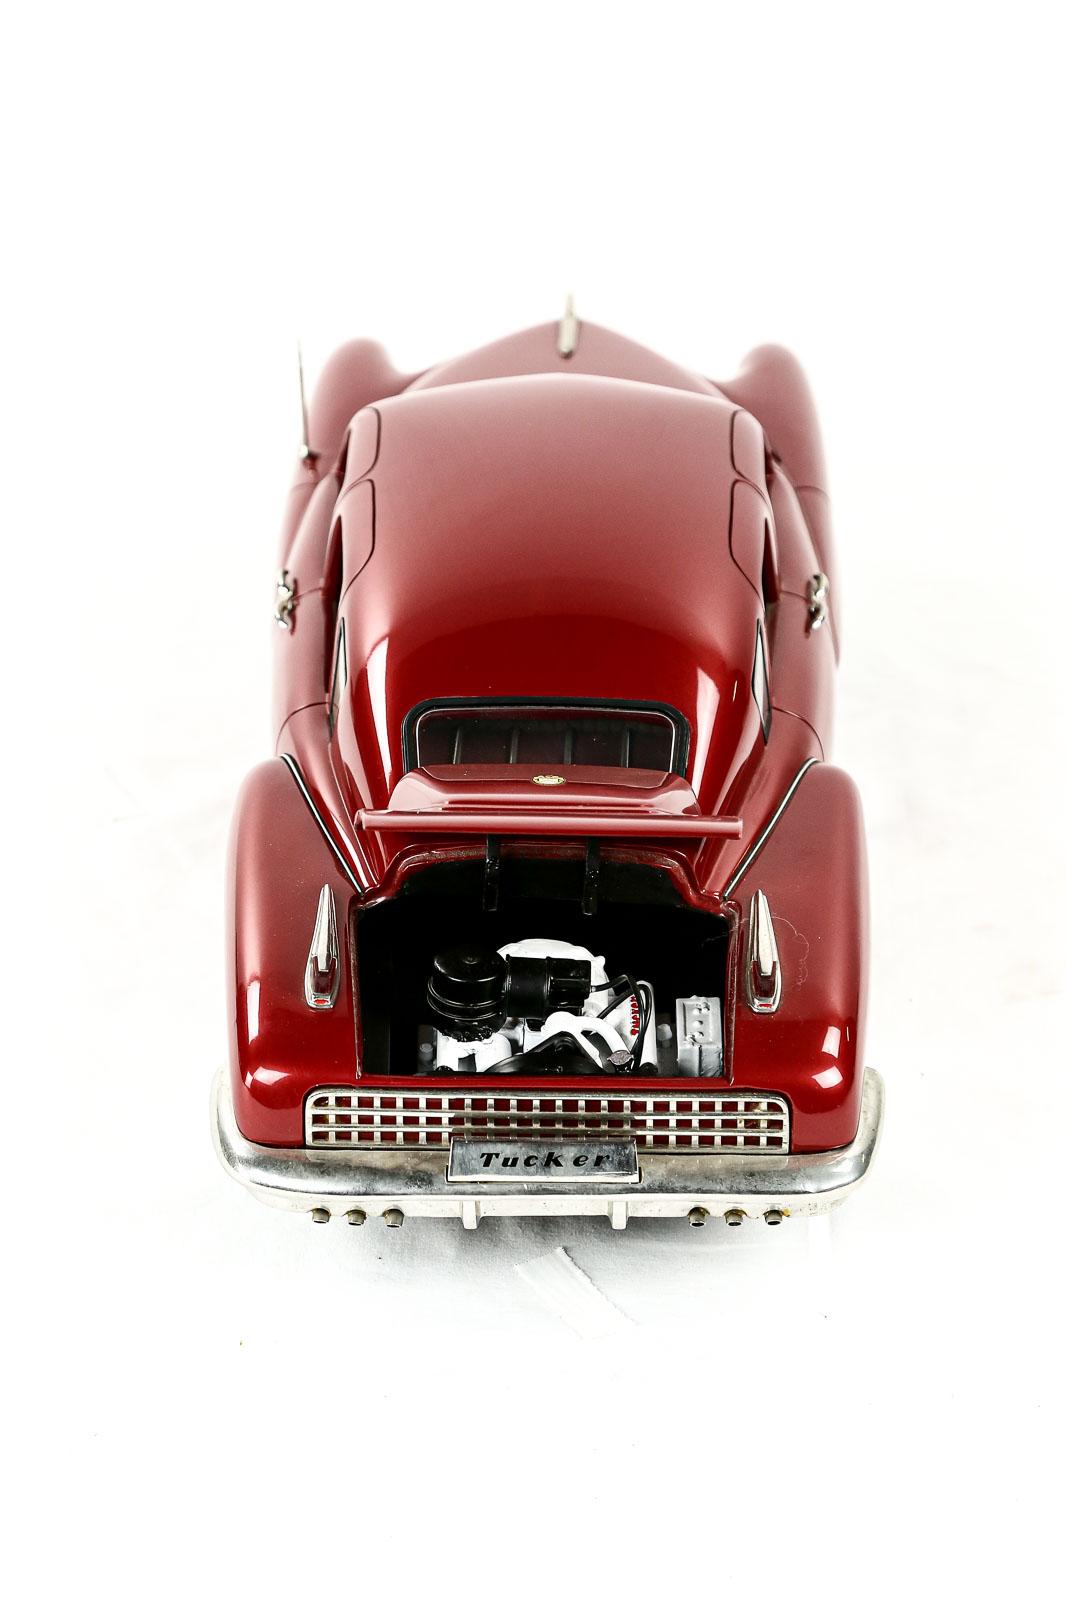 1948 Maroon Tucker Model Car